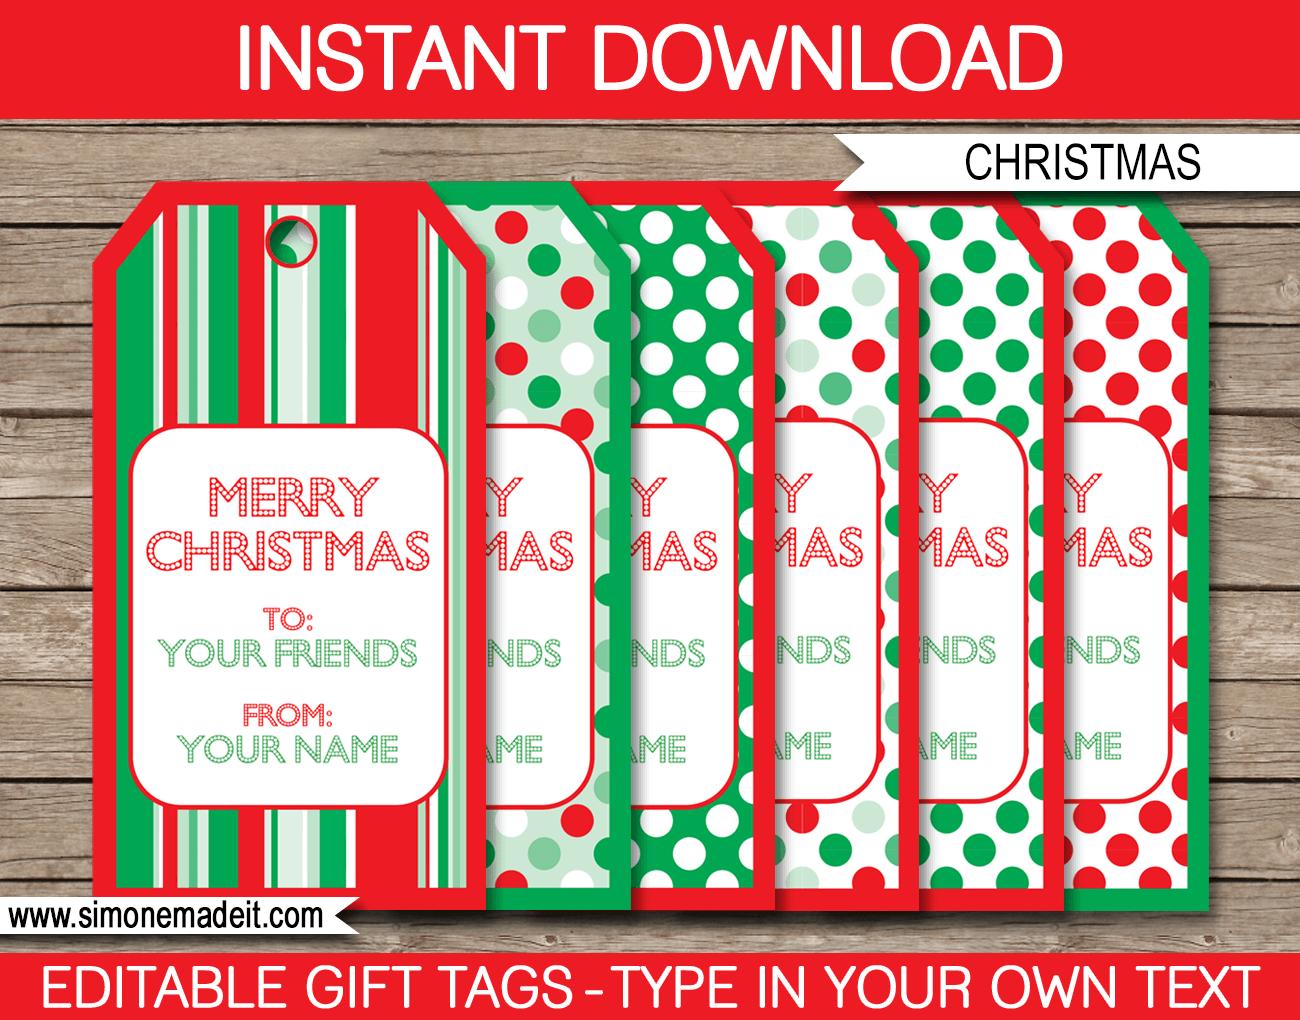 Christmas Printable Gift Tags Template | editable & printable | Merry Christmas | INSTANT DOWNLOAD $3.00 via simonemadeit.com